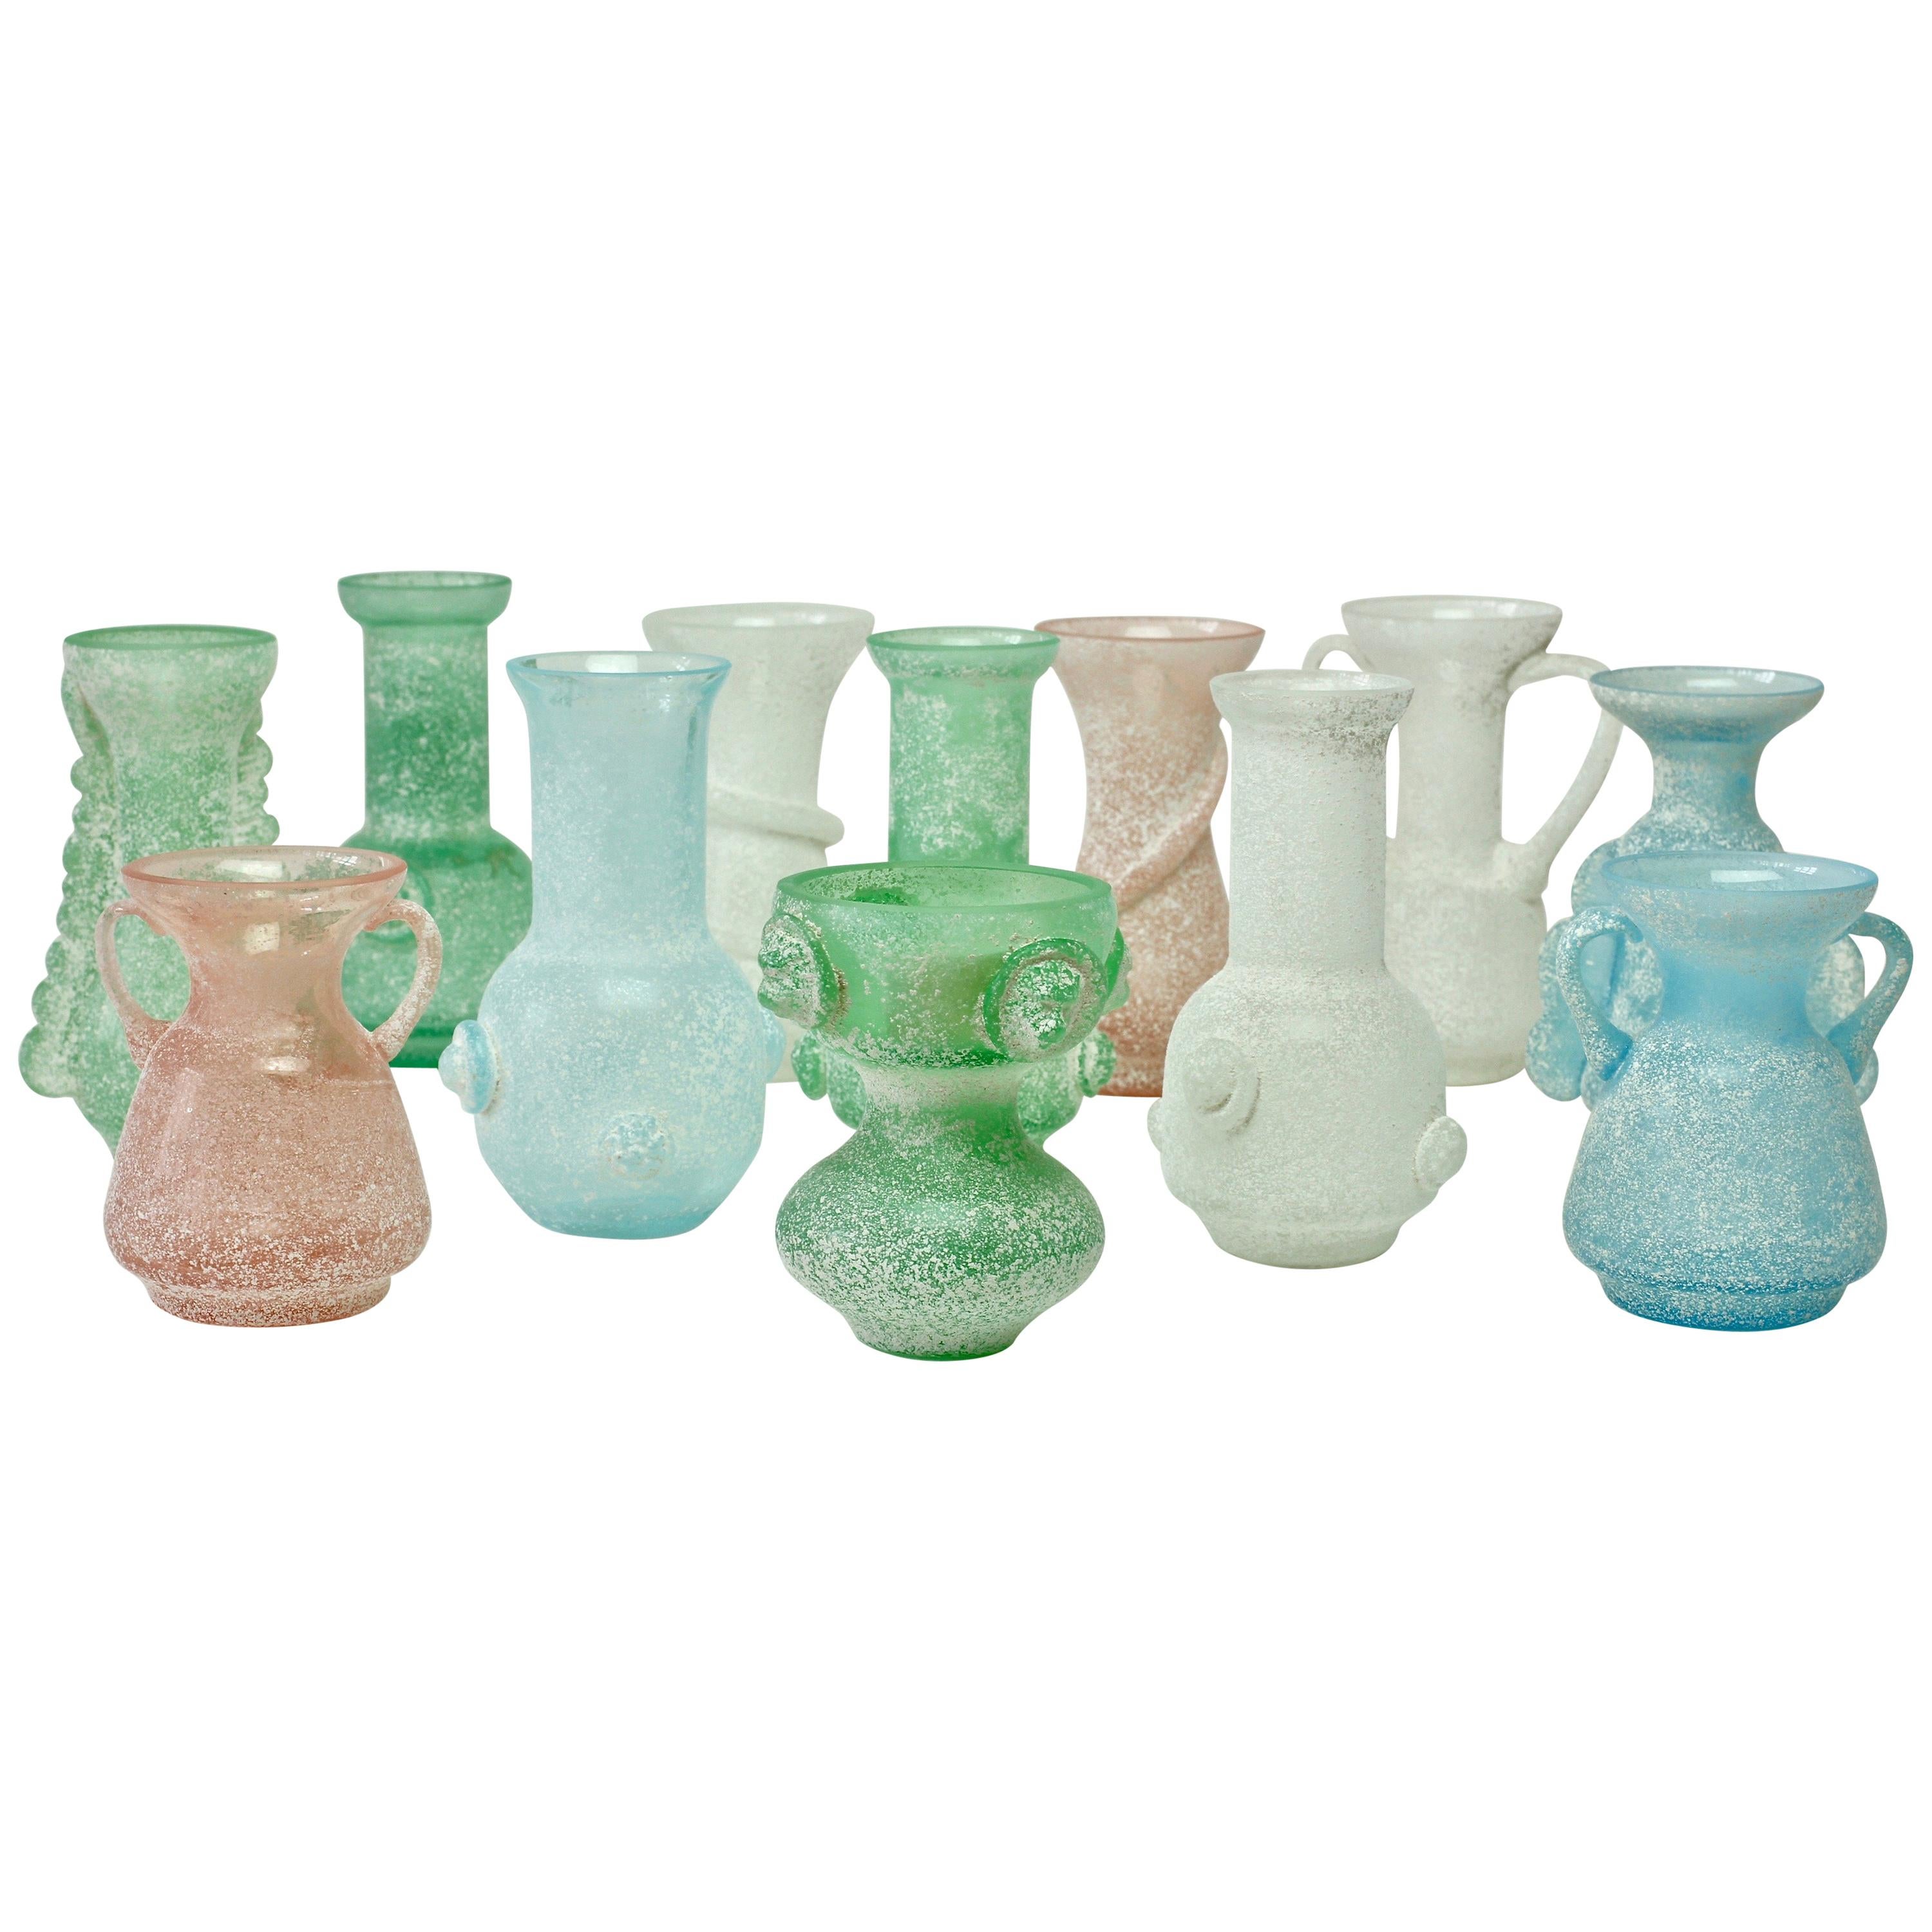 Seguso Vetri d'Arte Ensemble of 'A Scavo' Murano Art Glass Vases and Vessels